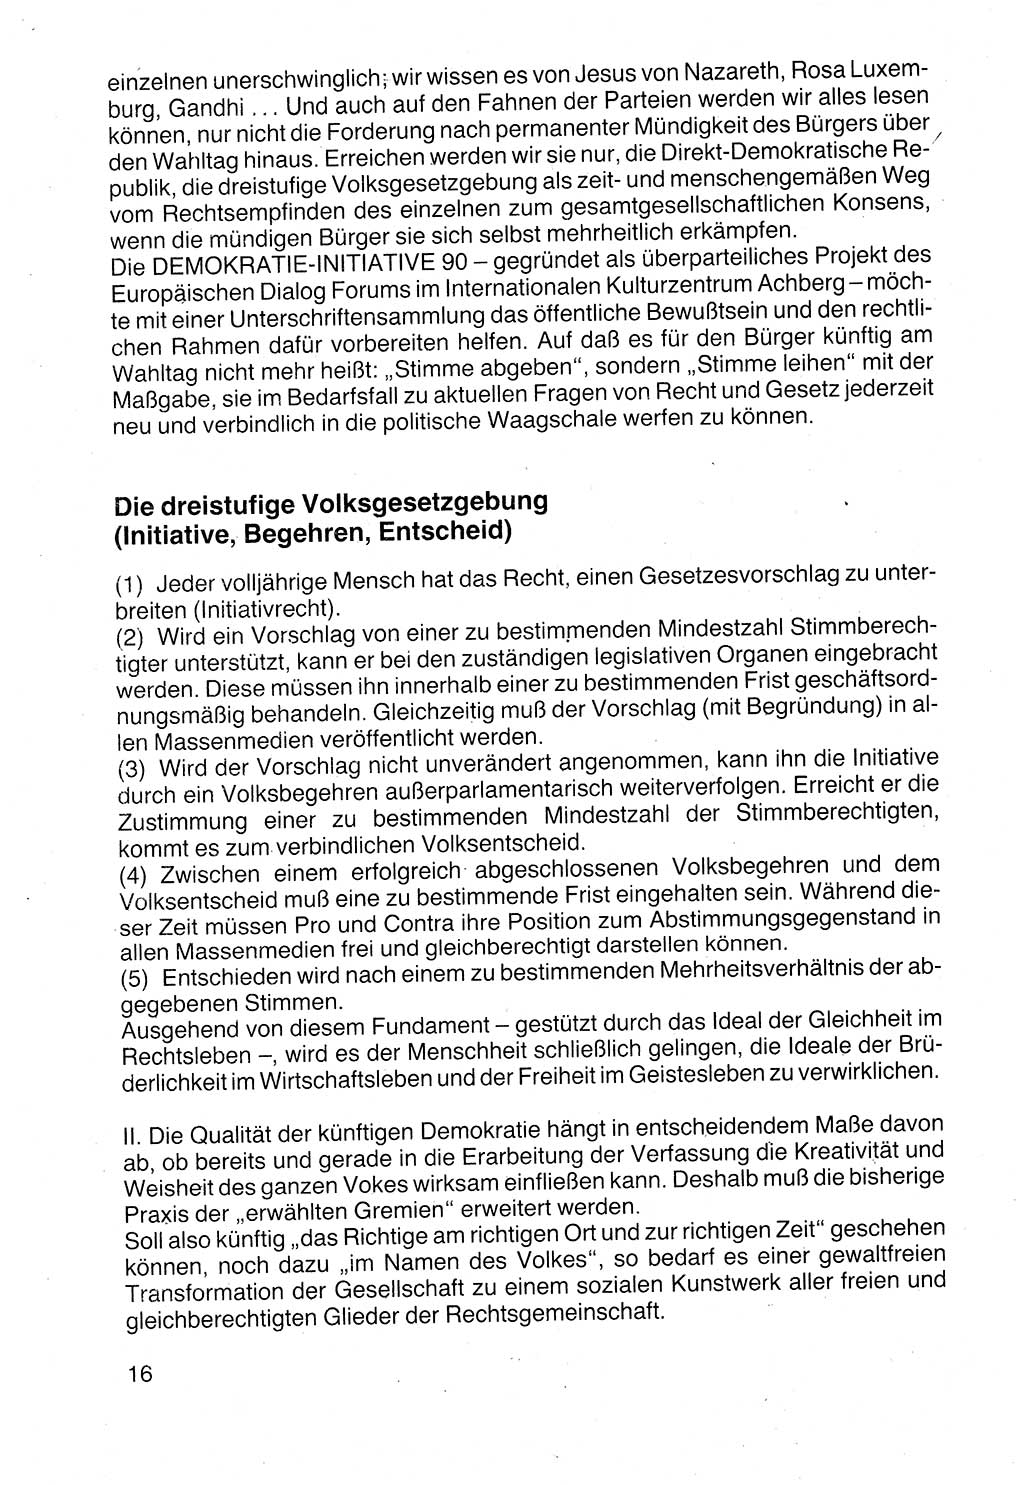 Politische Parteien und Bewegungen der DDR (Deutsche Demokratische Republik) über sich selbst 1990, Seite 16 (Pol. Part. Bew. DDR 1990, S. 16)